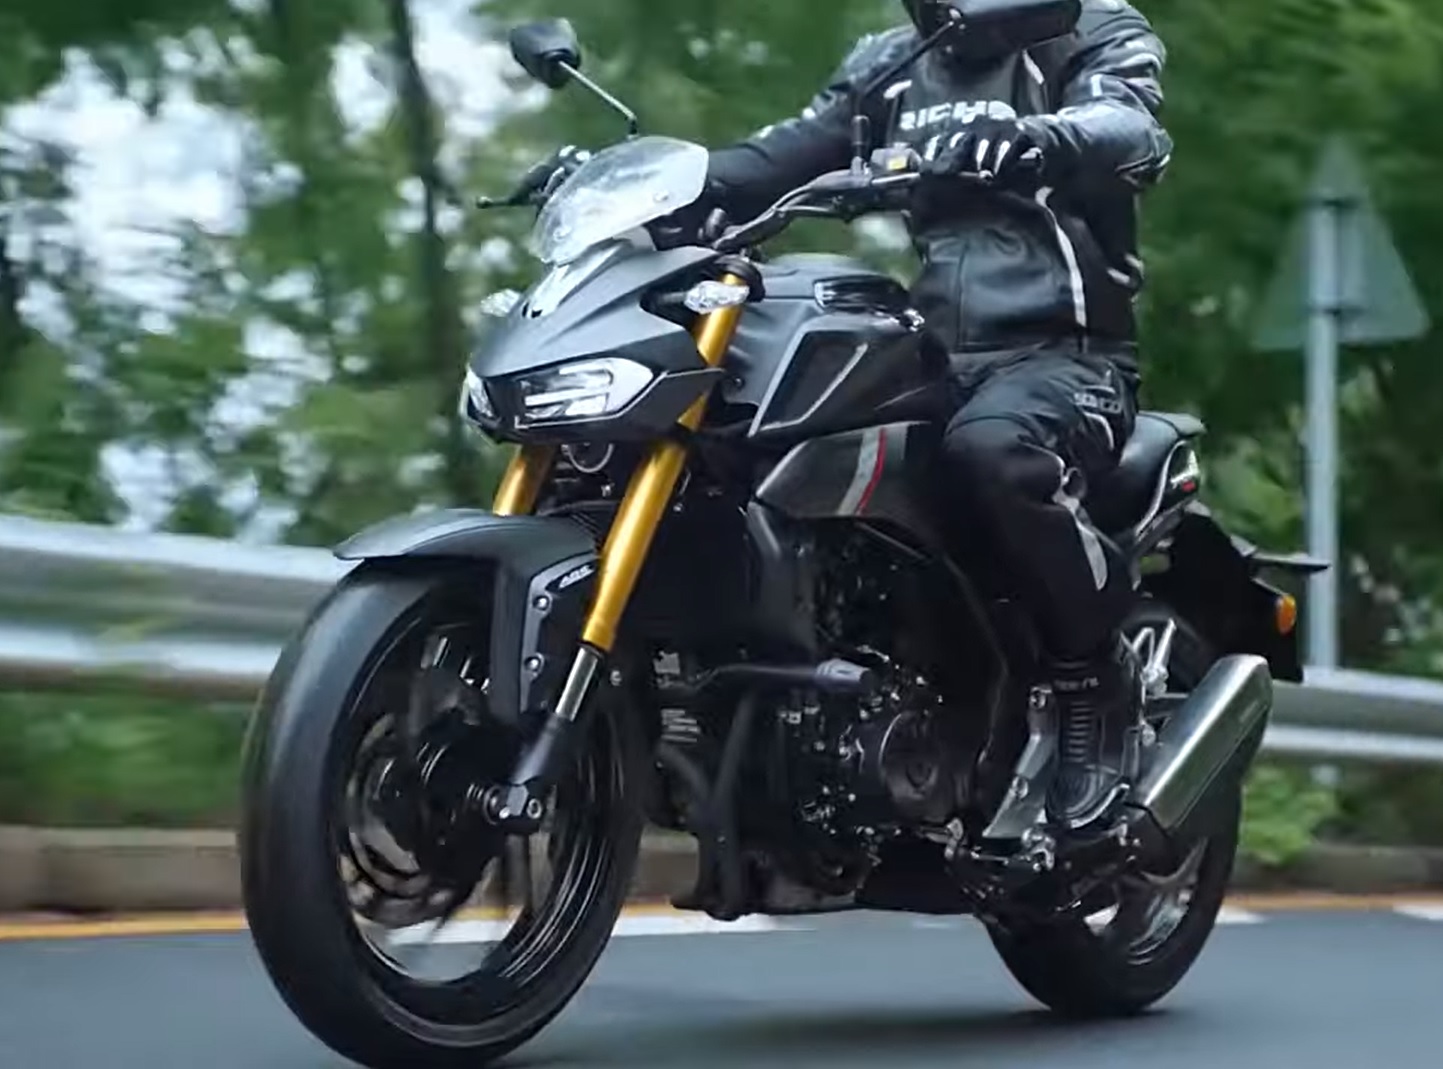 Haojue XCR 300: confira o vídeo da moto em ação